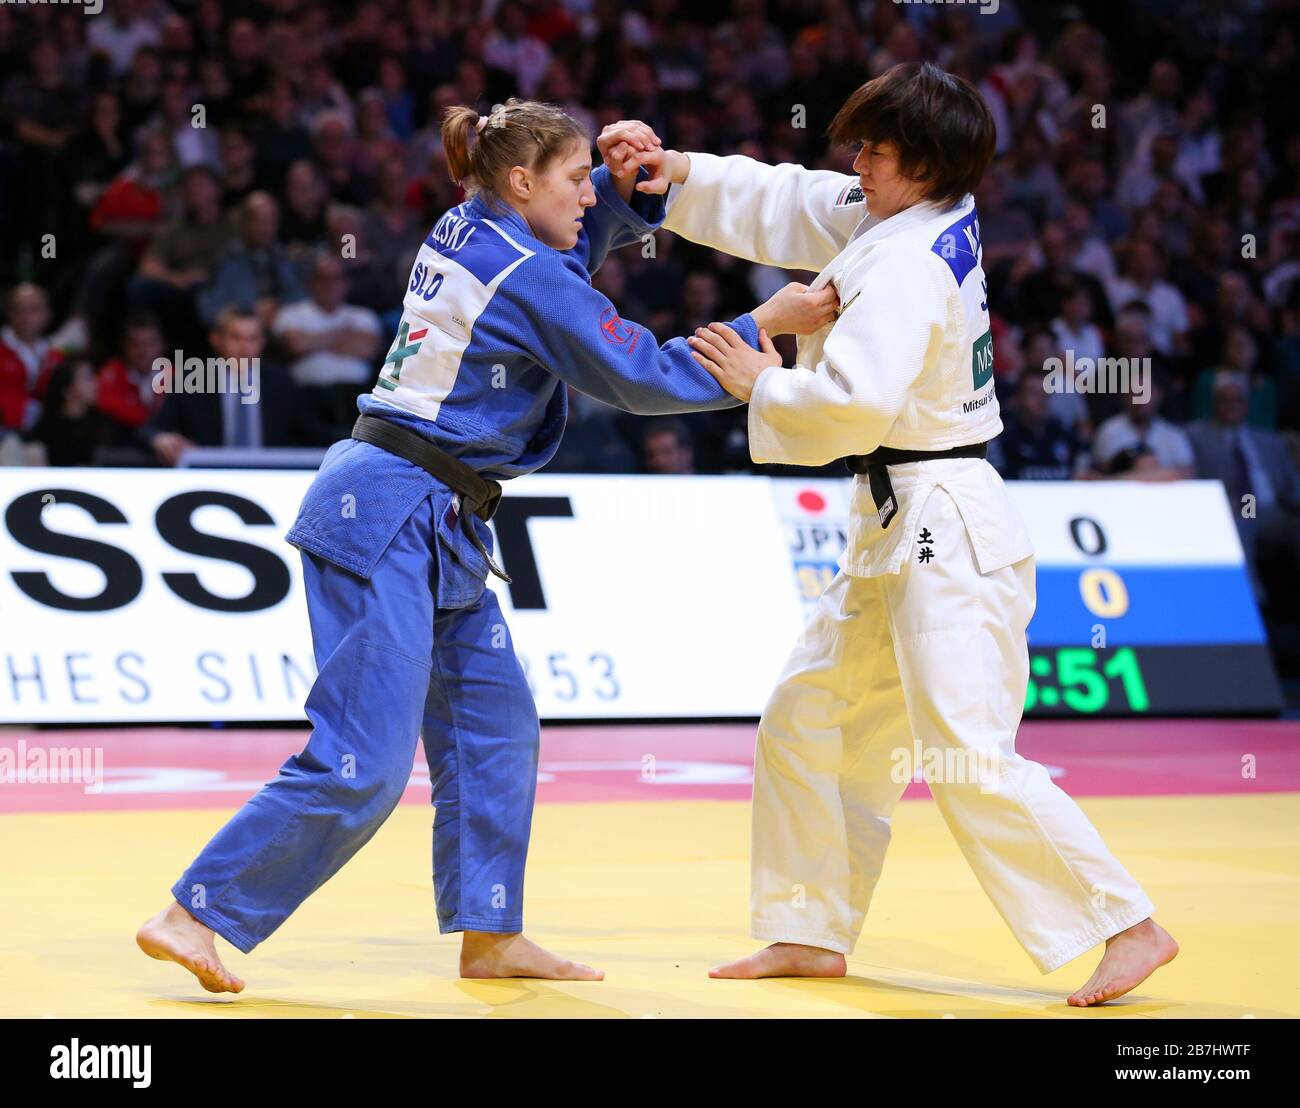 Paris, France - 08th Feb, 2020: Masako Doi for Japan against Andreja Leski for Slovenia, Women's -63 kg, Bronze Medal Match (Credit: Mickael Chavet) Stock Photo